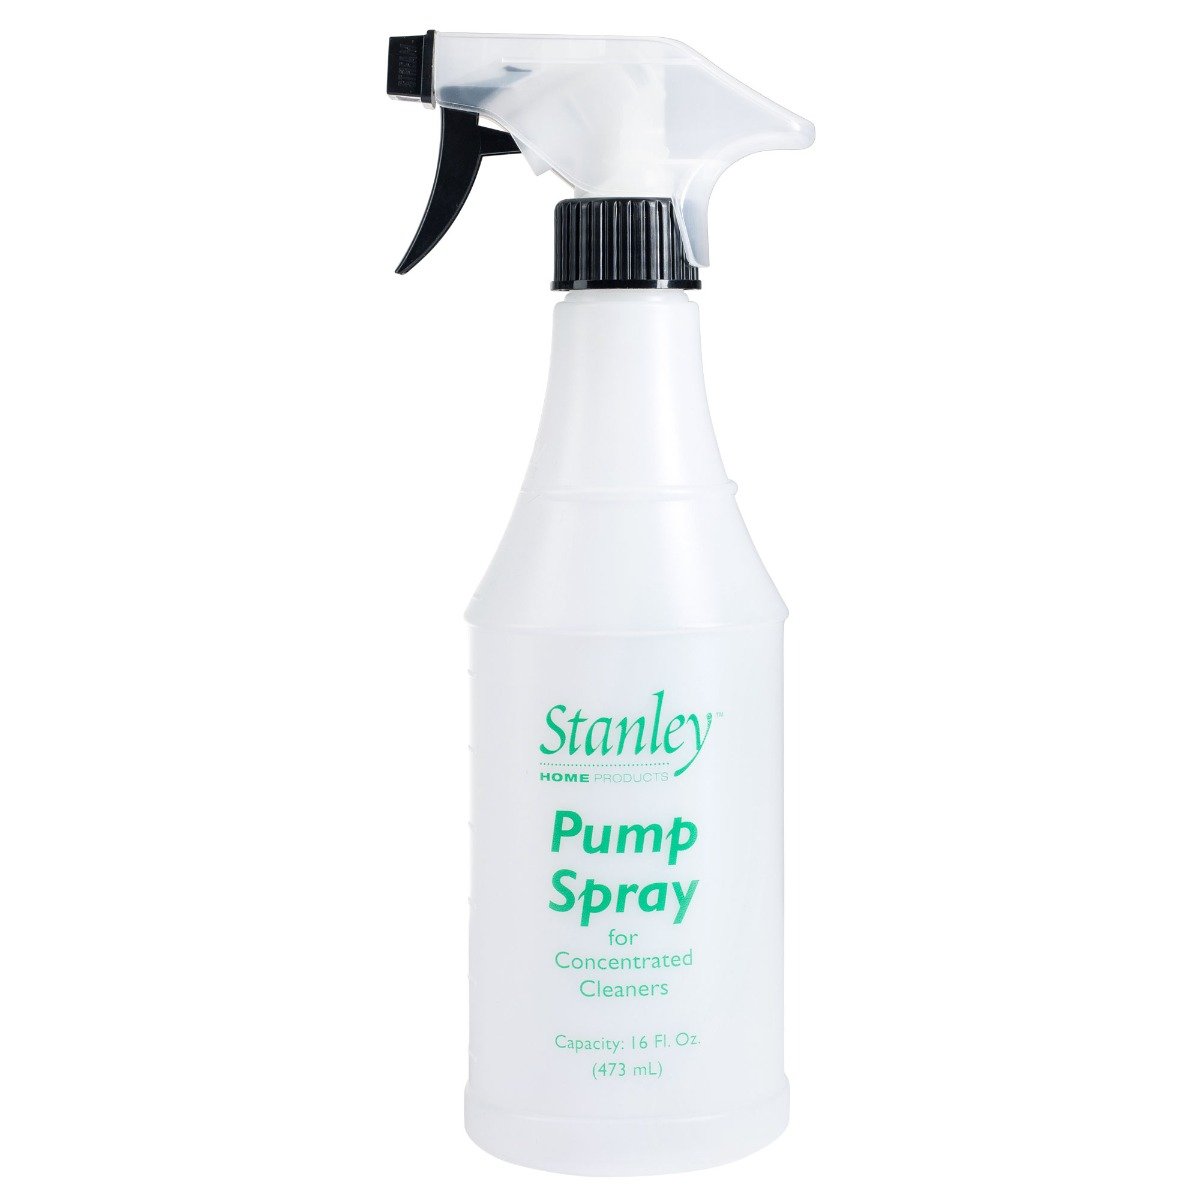 Fuller Brush | Easy Shower Spray Refill Bottle | 687